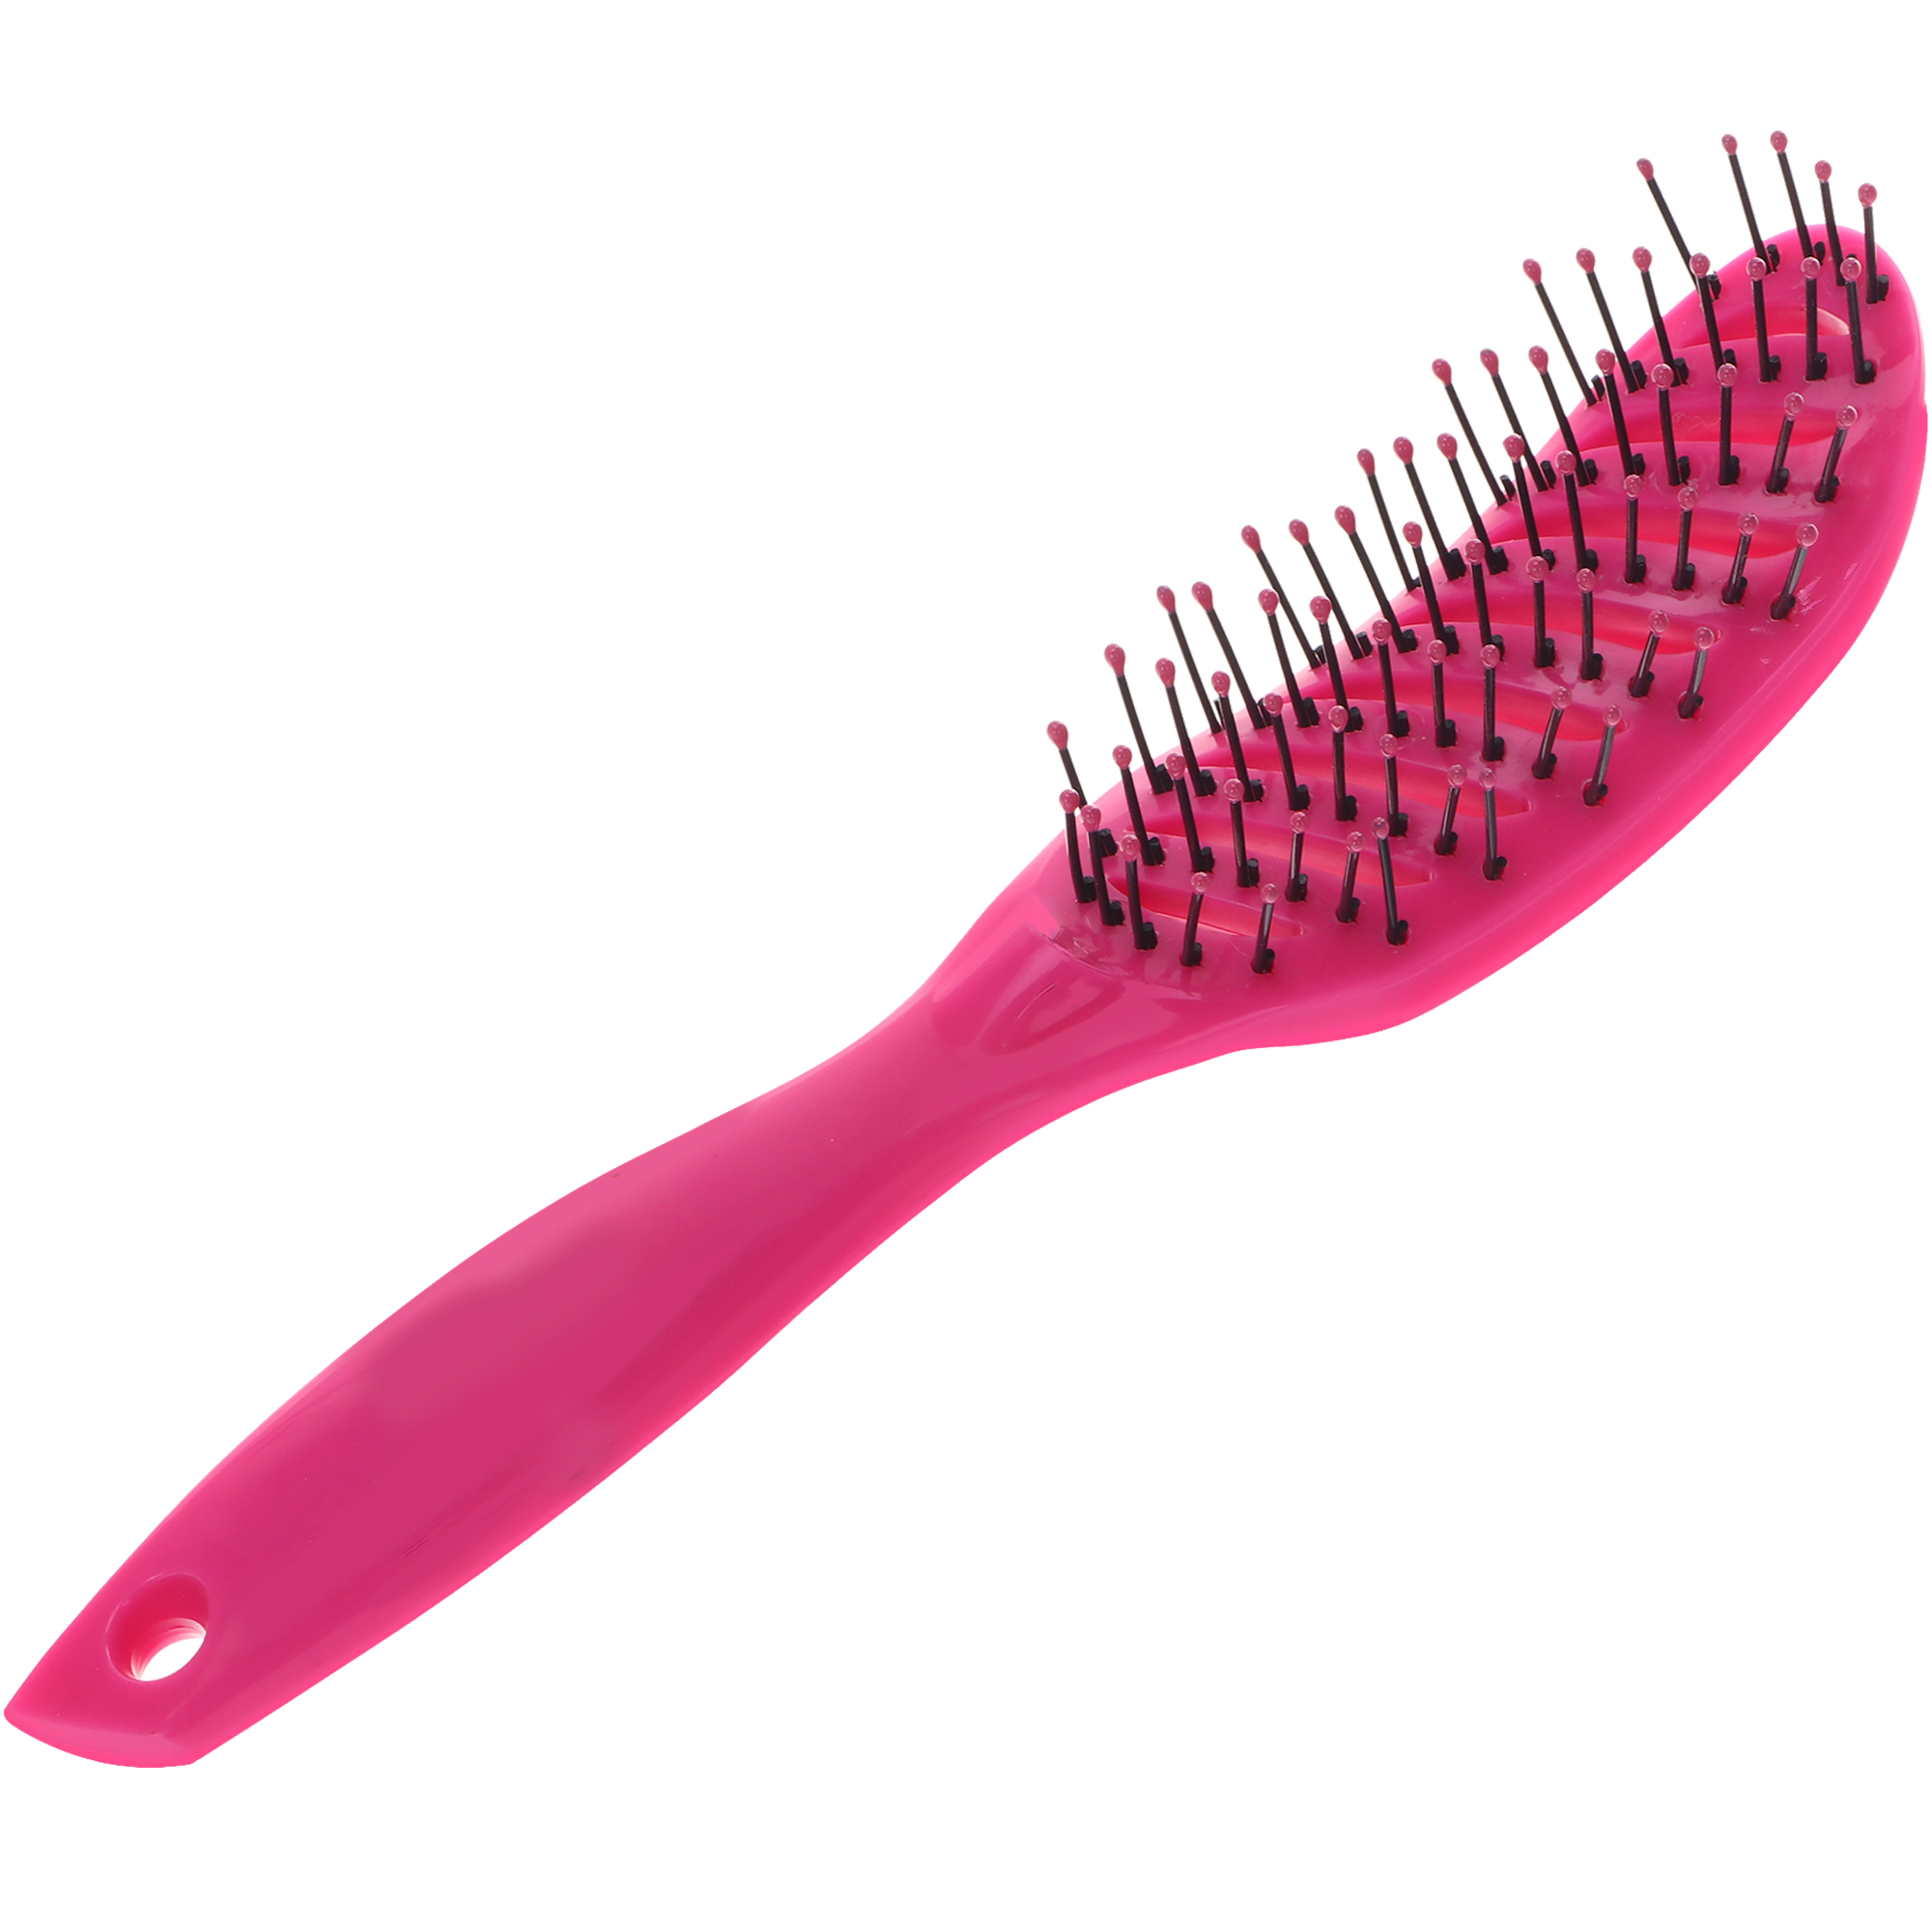 Расческа Nice View каркасная для укладки волос с пластиковыми зубьями L-23 розовая расческа грабли с конусообразными зубьями 11 х 15 5 см красная